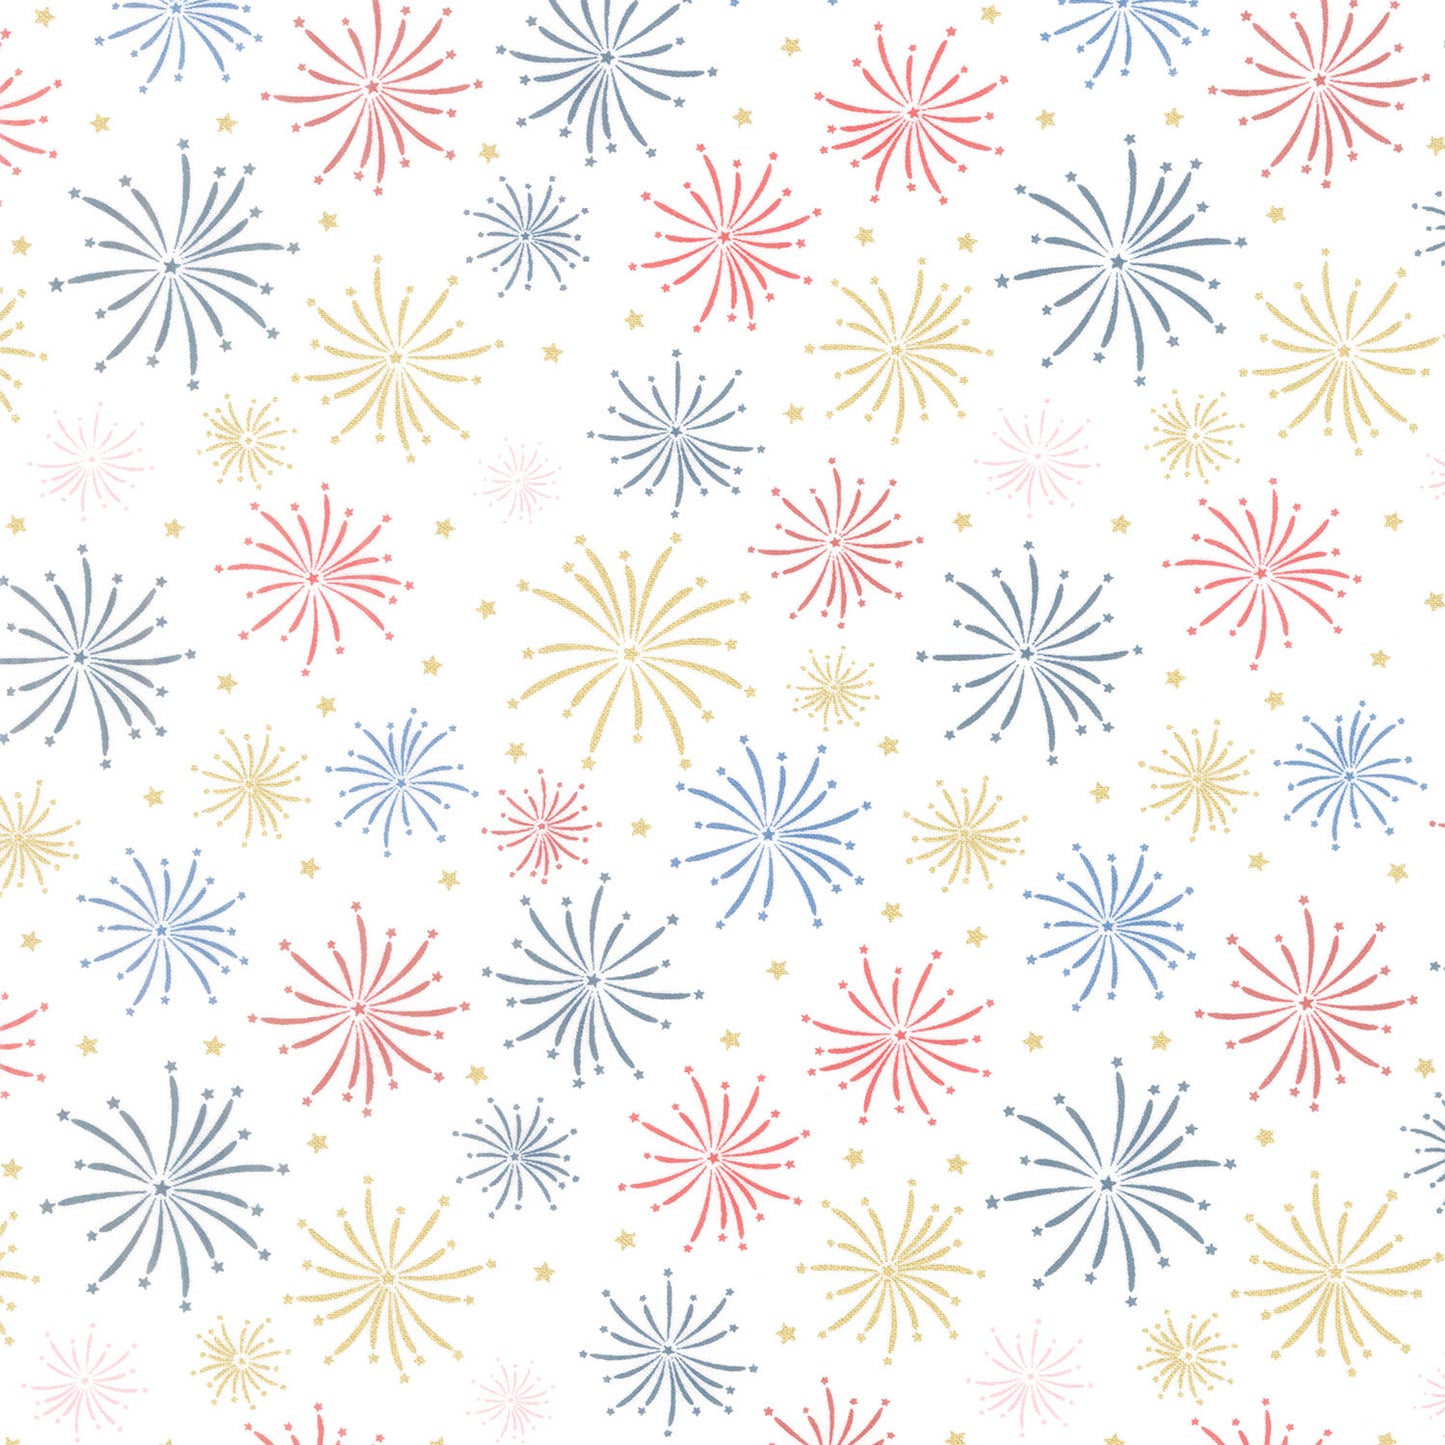 Sweet Freedom - Fireworks Cloud Sparkle Yardage Primary Image